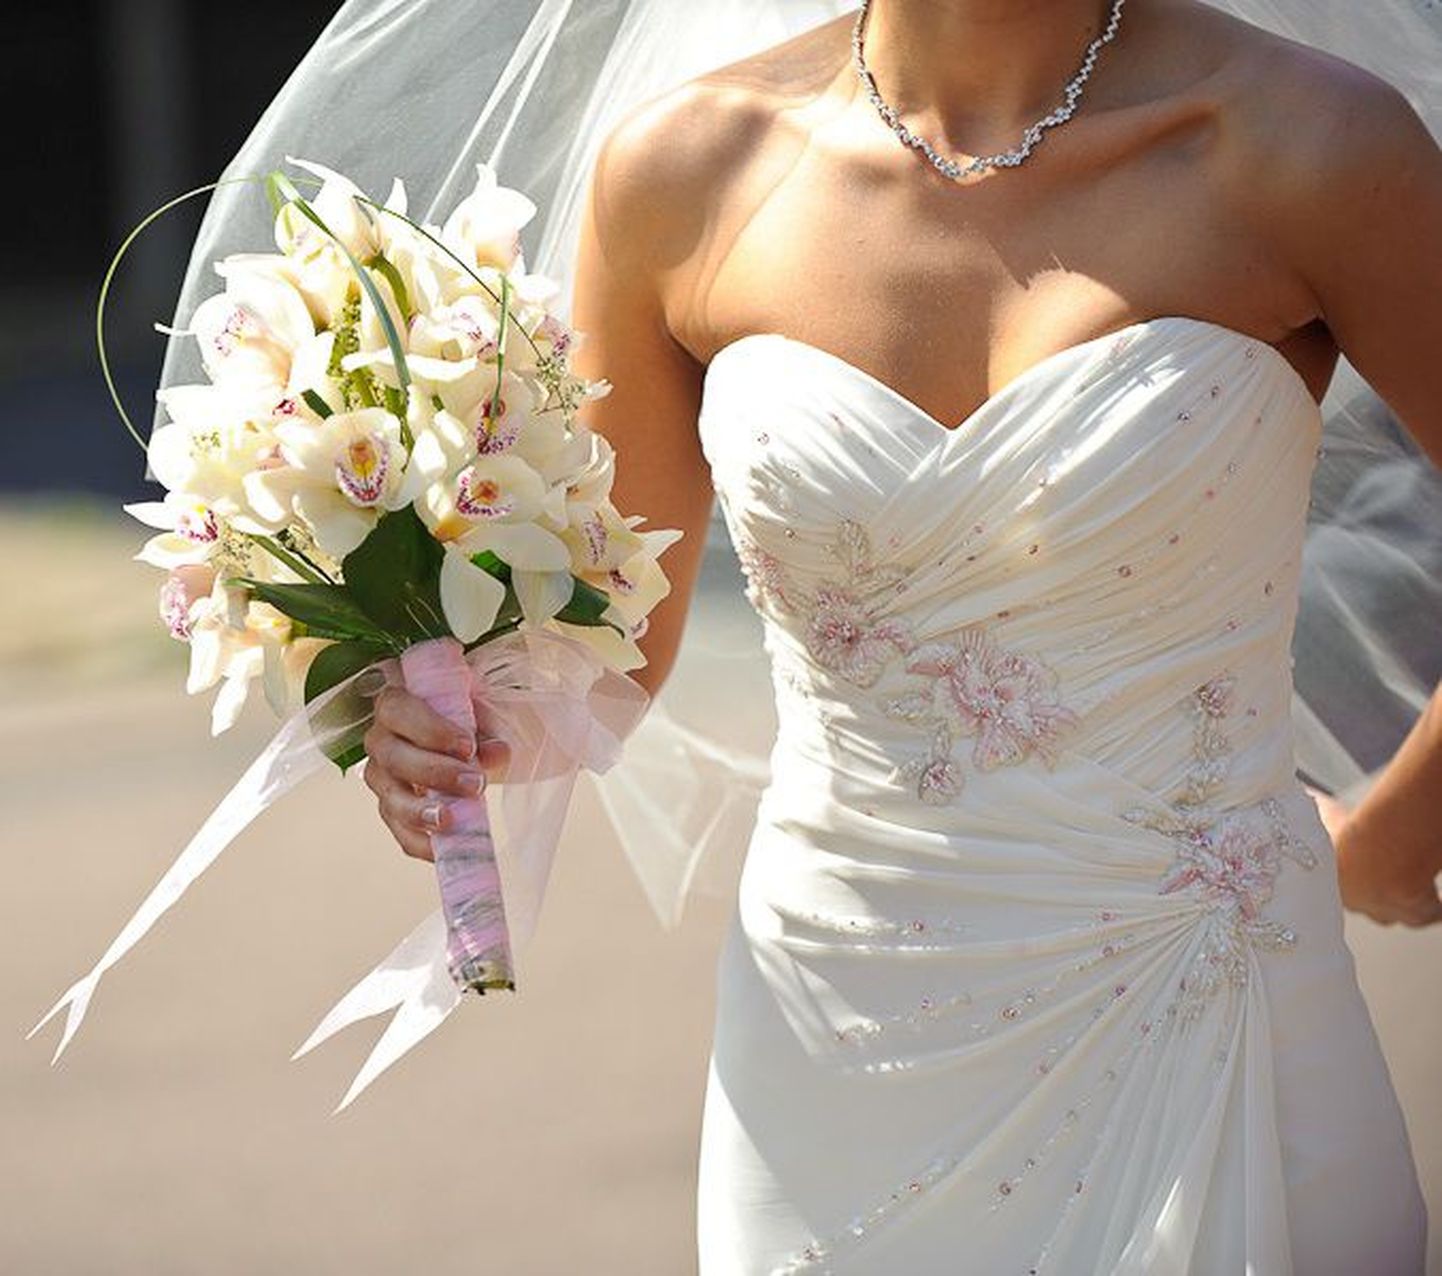 На свадьбе это платье было белоснежным, а после химчистки приобрело розоватый оттенок.